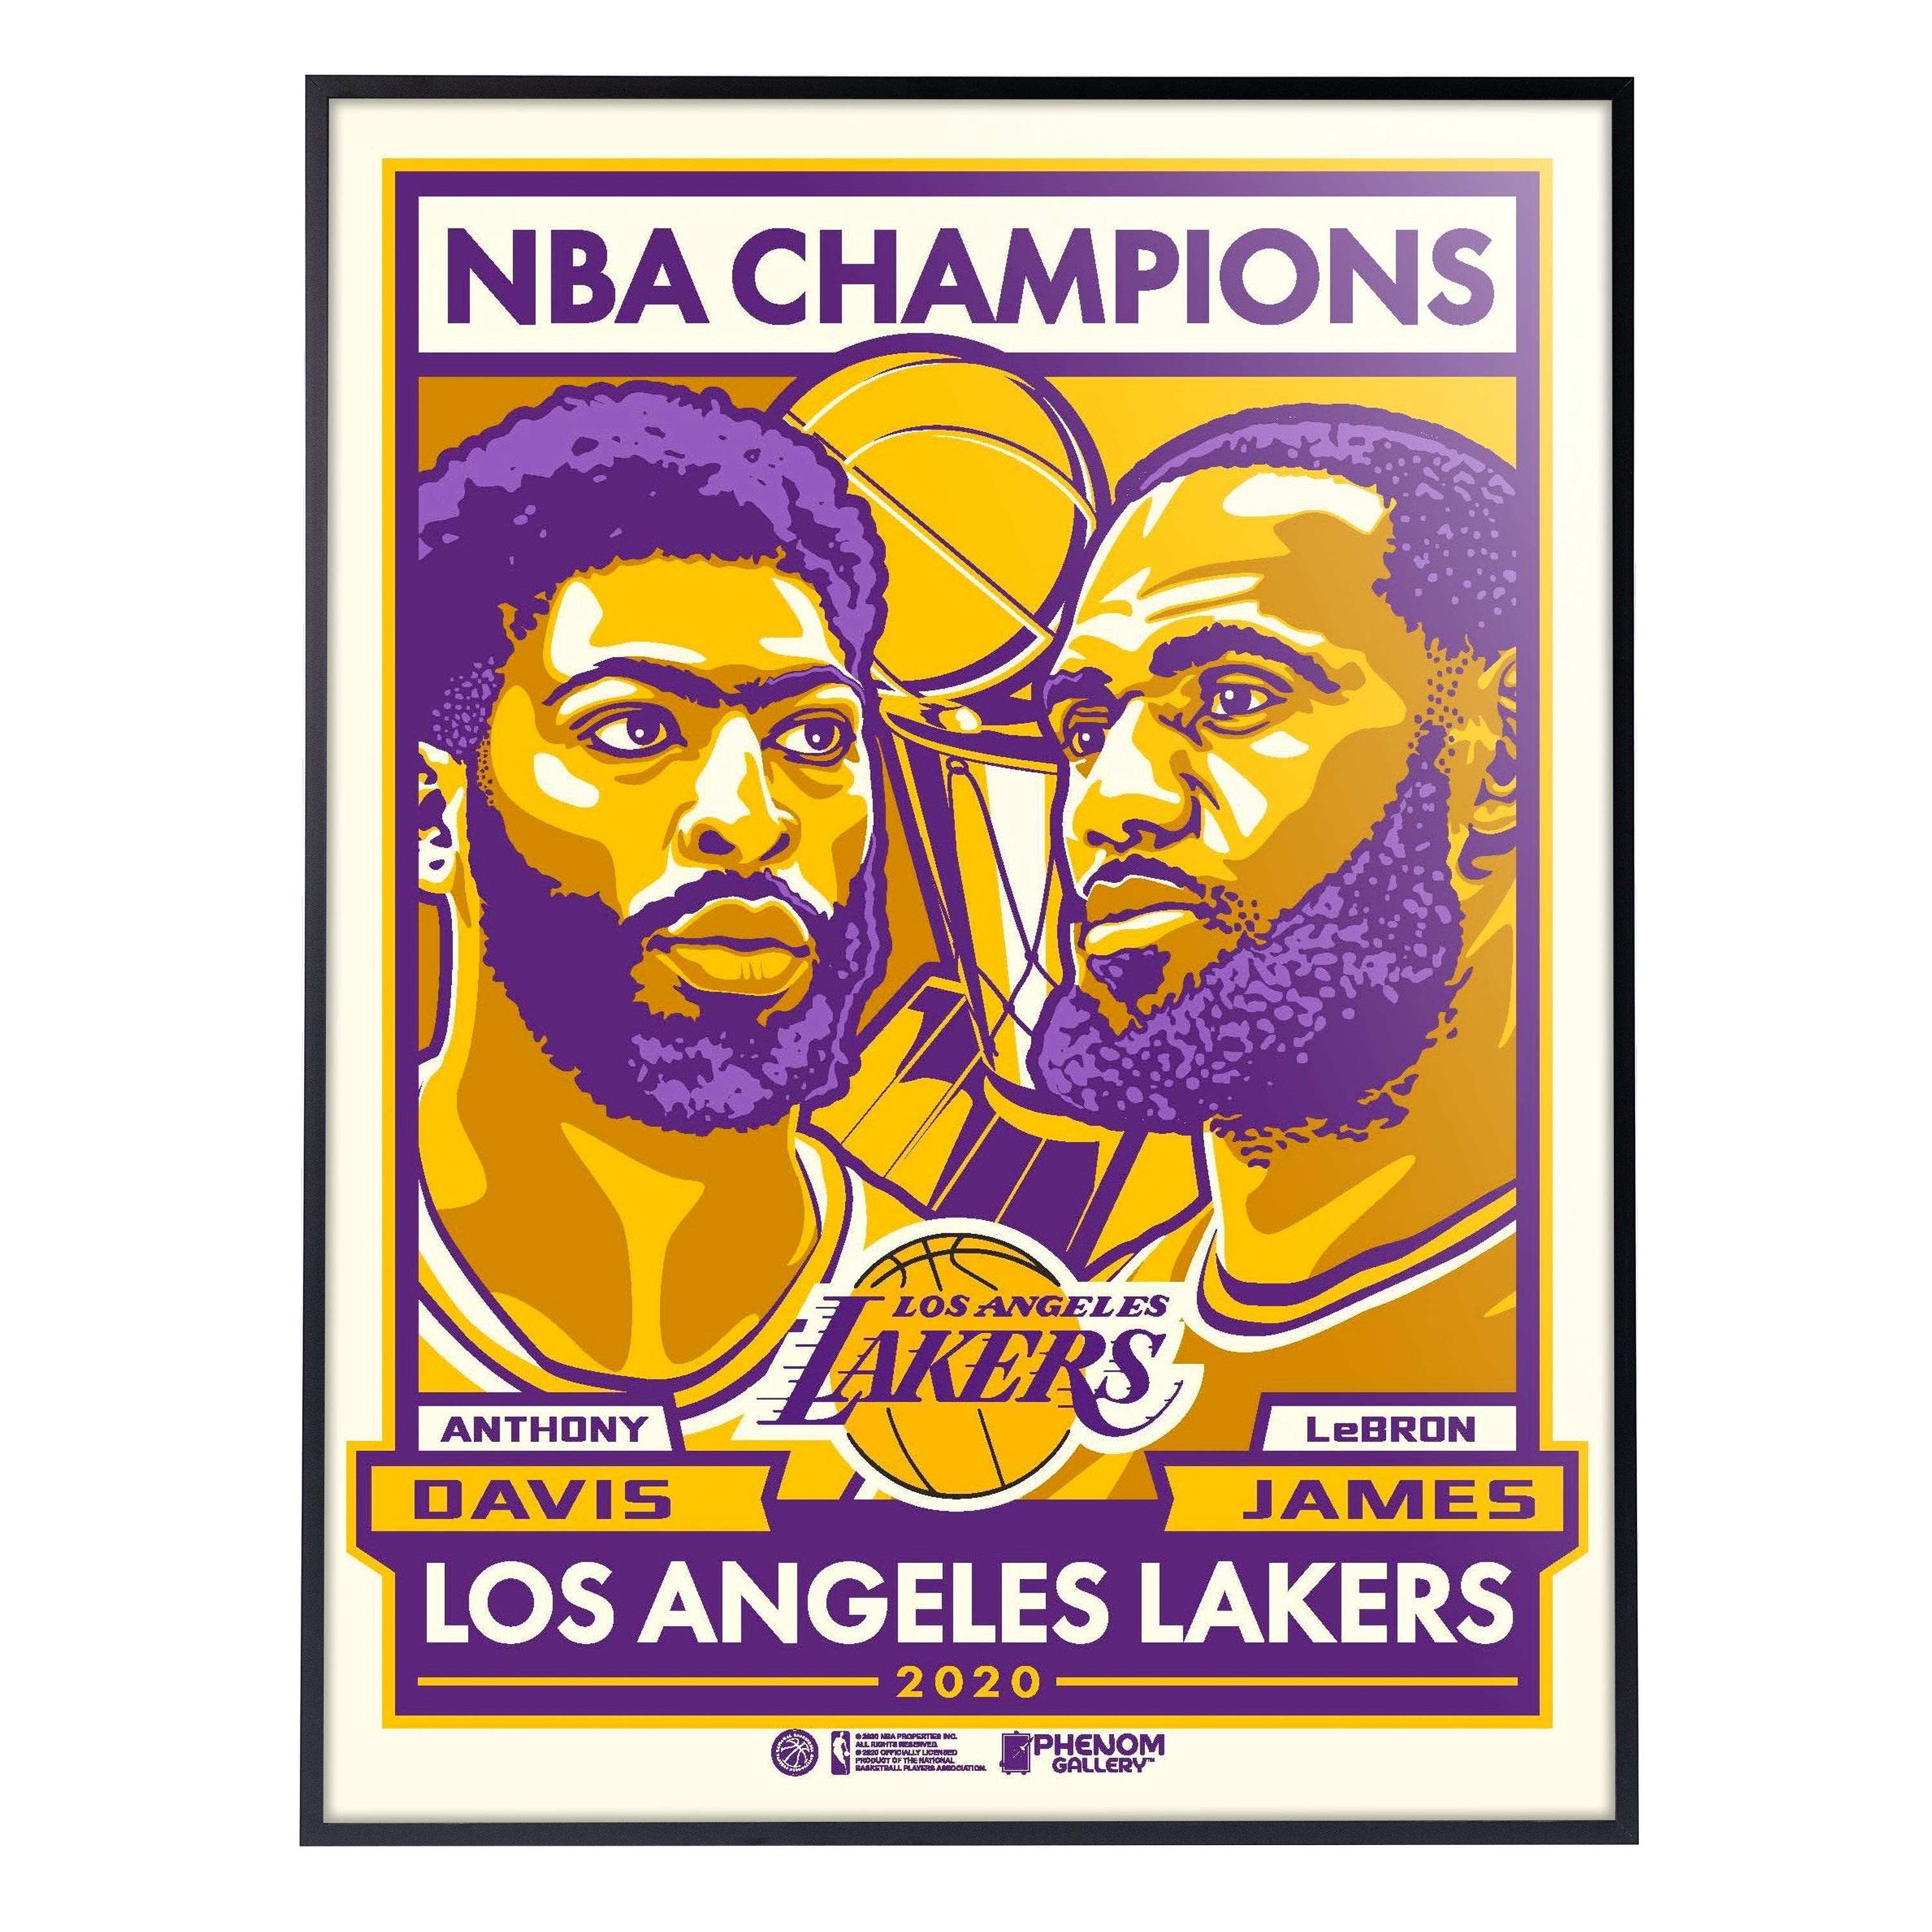 Lakers 2020 NBA CHAMPIONS  Nba champions, Lakers, Nba